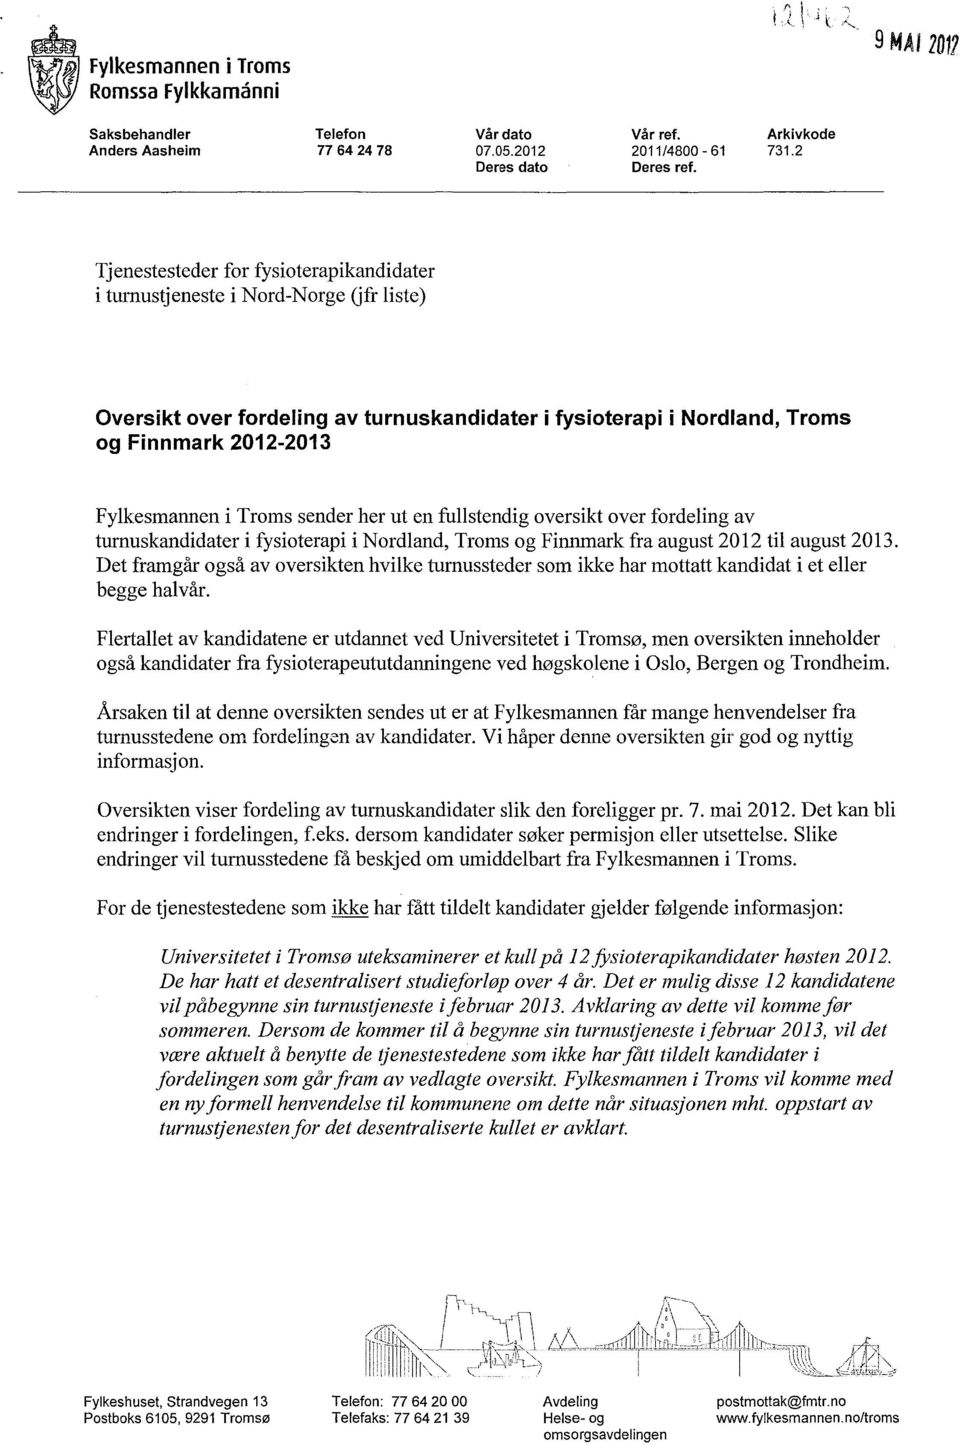 Troms sender her ut en fullstendig oversikt over fordeling av turnuskandidater i fysioterapi i Nordland, Troms og Finnmark fra august 2012 til august 2013.